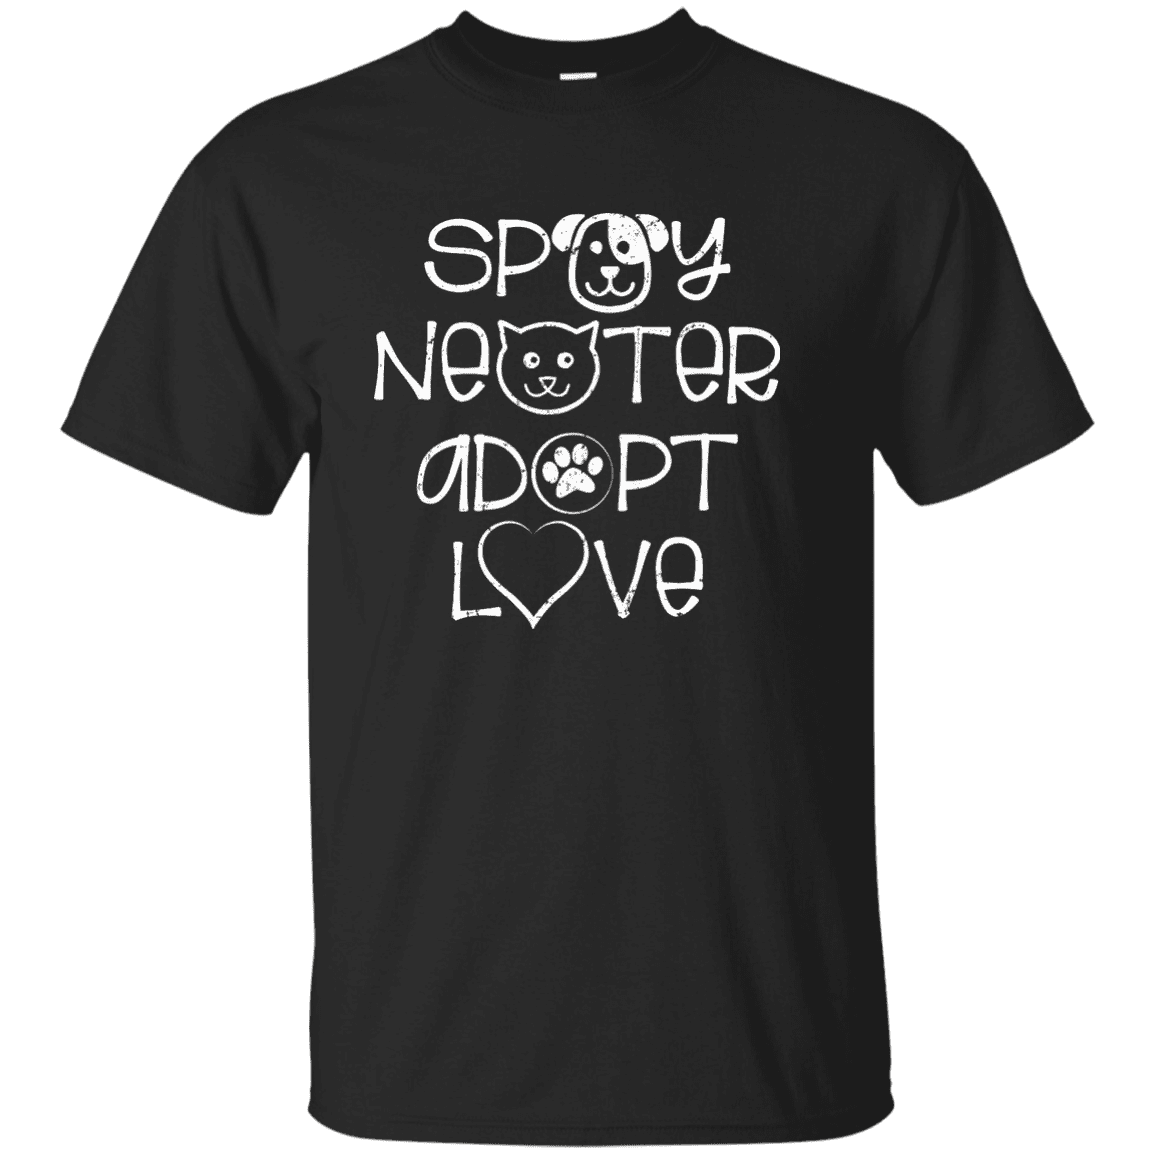 Spay Neuter Adopt Love - T Shirt.